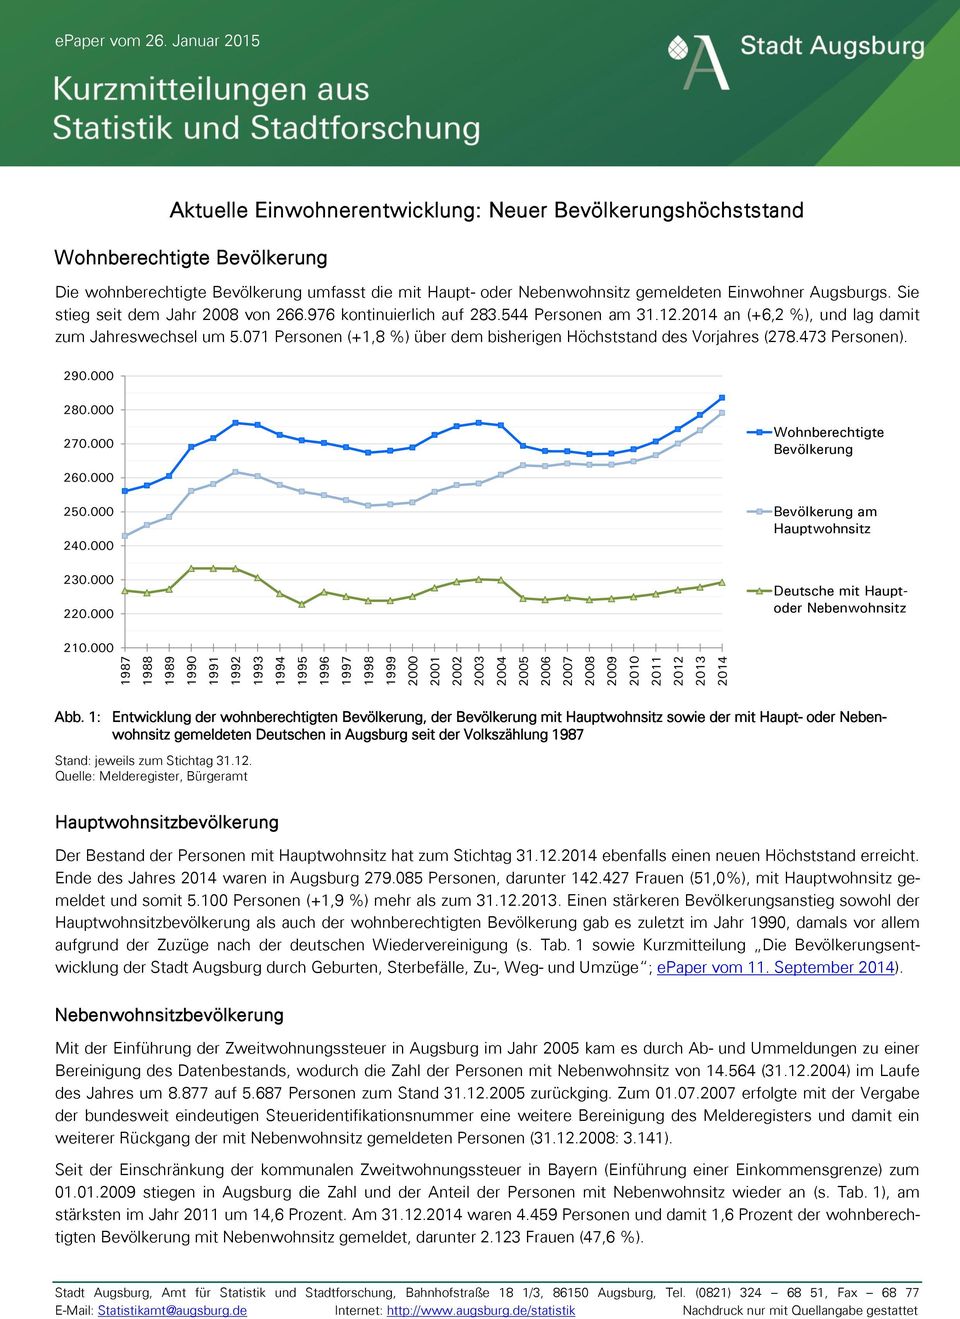 Augsburgs. Sie stieg seit dem Jahr 008 von 66.976 kontinuierlich auf 83.544 Personen am 31.1.014 an (+6, %), und lag da zum Jahreswechsel um 5.